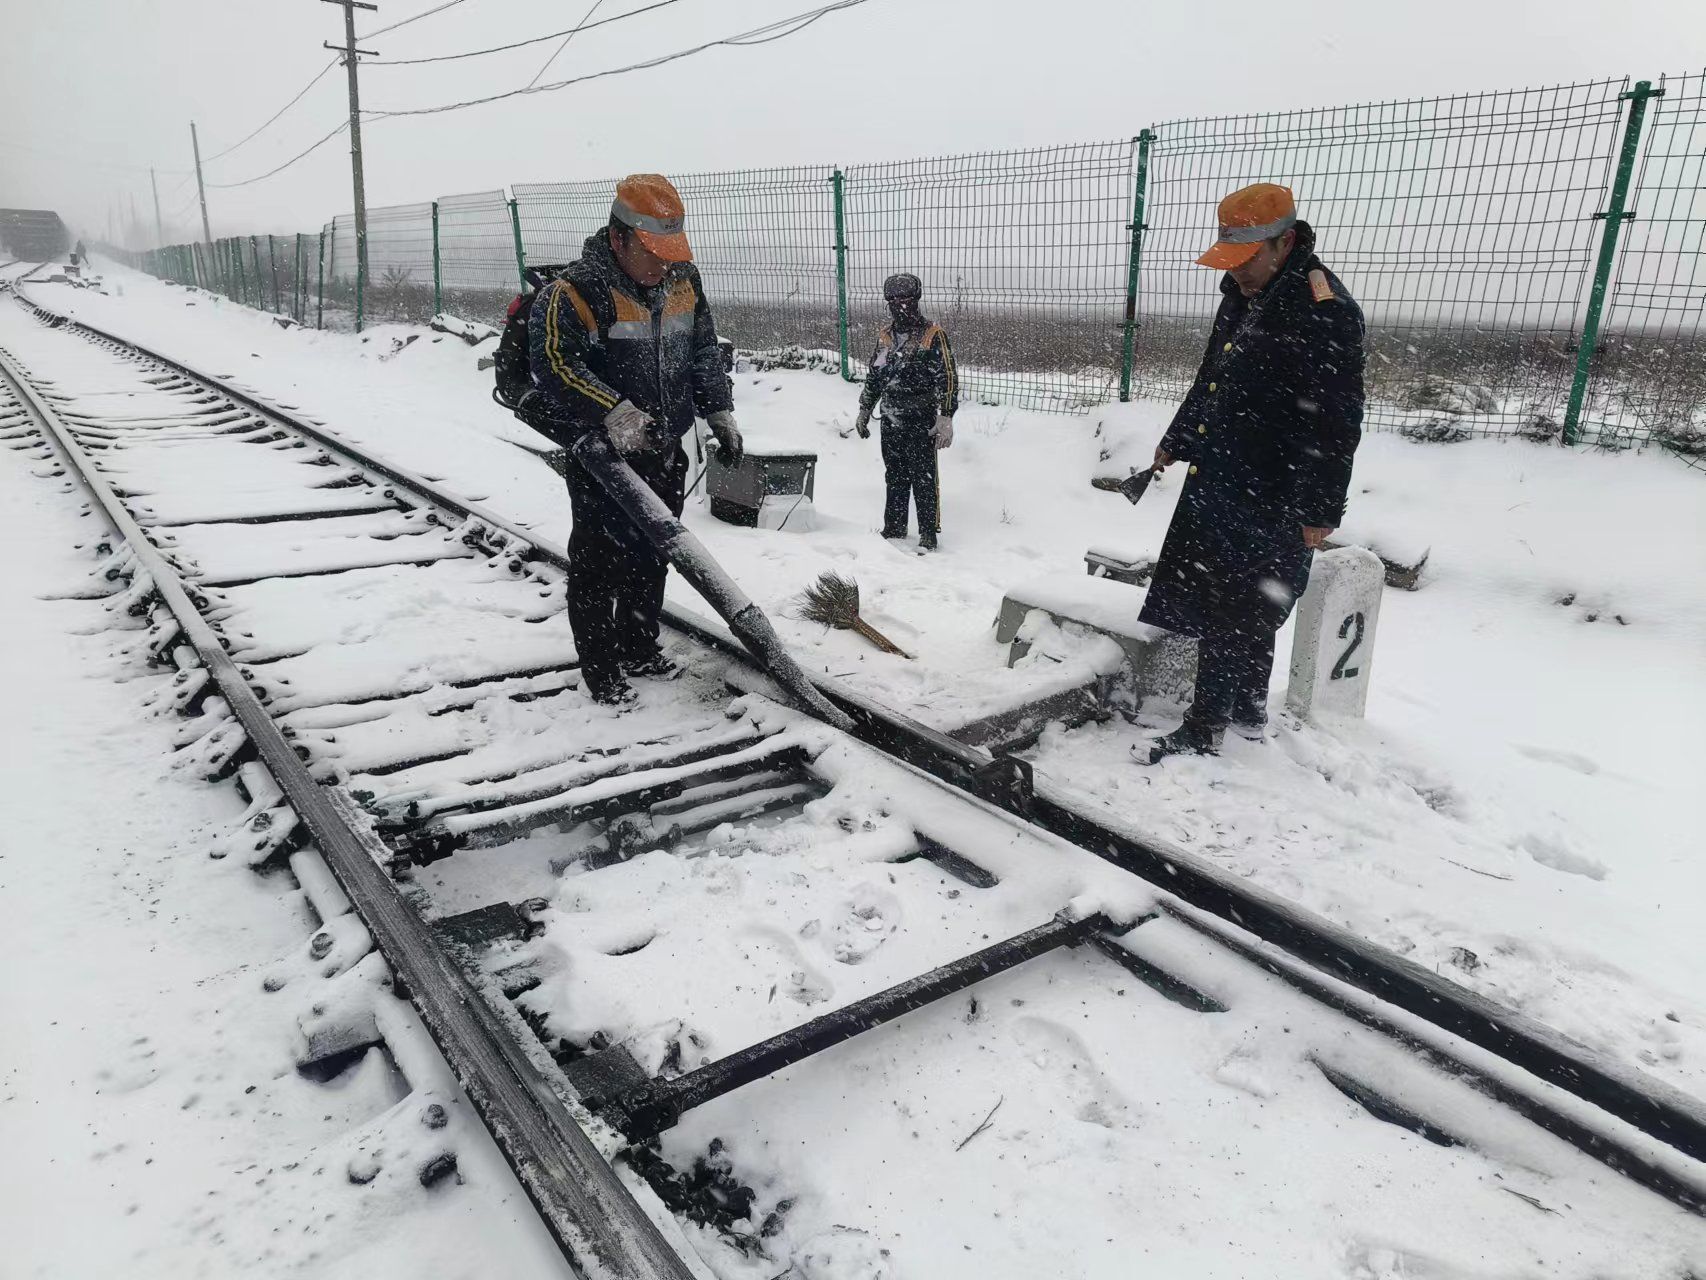 澄合矿业铁运分公司组织职工对铁路钢轨、道岔、道口轮缘槽等关键部位的积雪进行清扫.jpg